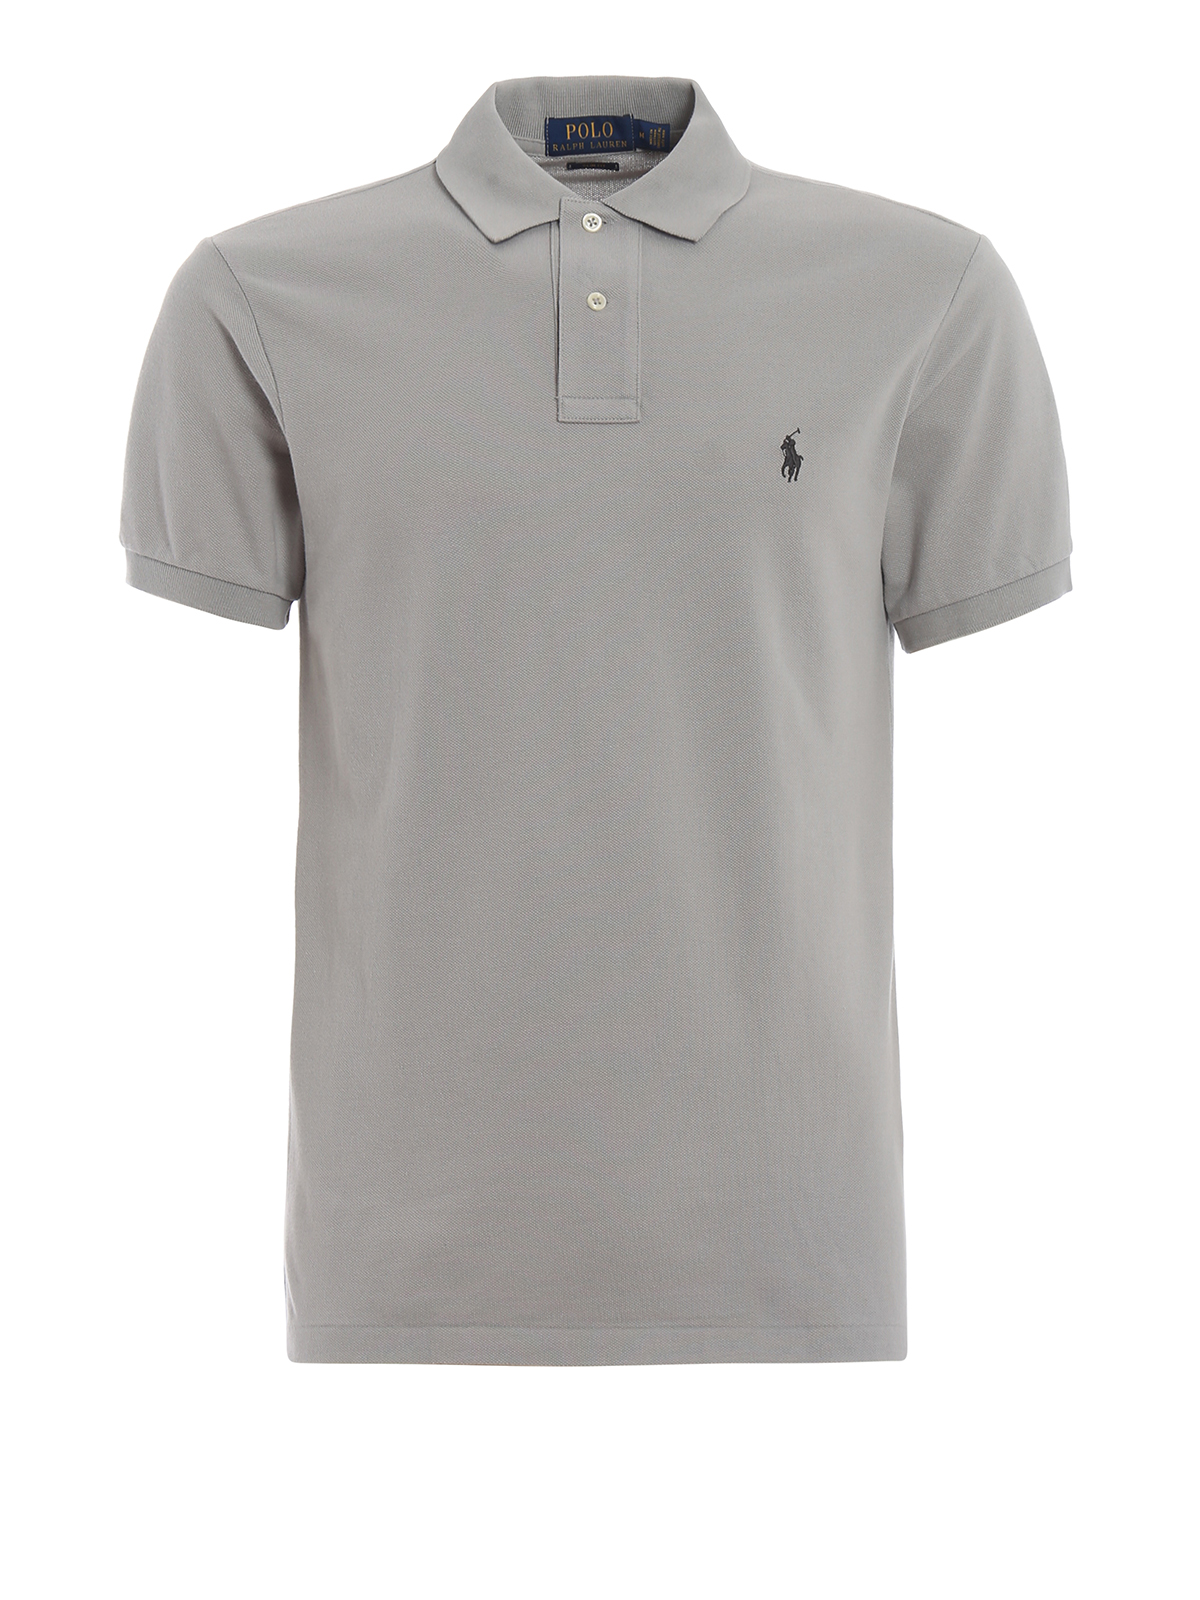 Polo shirts Polo Ralph Lauren - Classic grey polo shirt in pique cotton ...